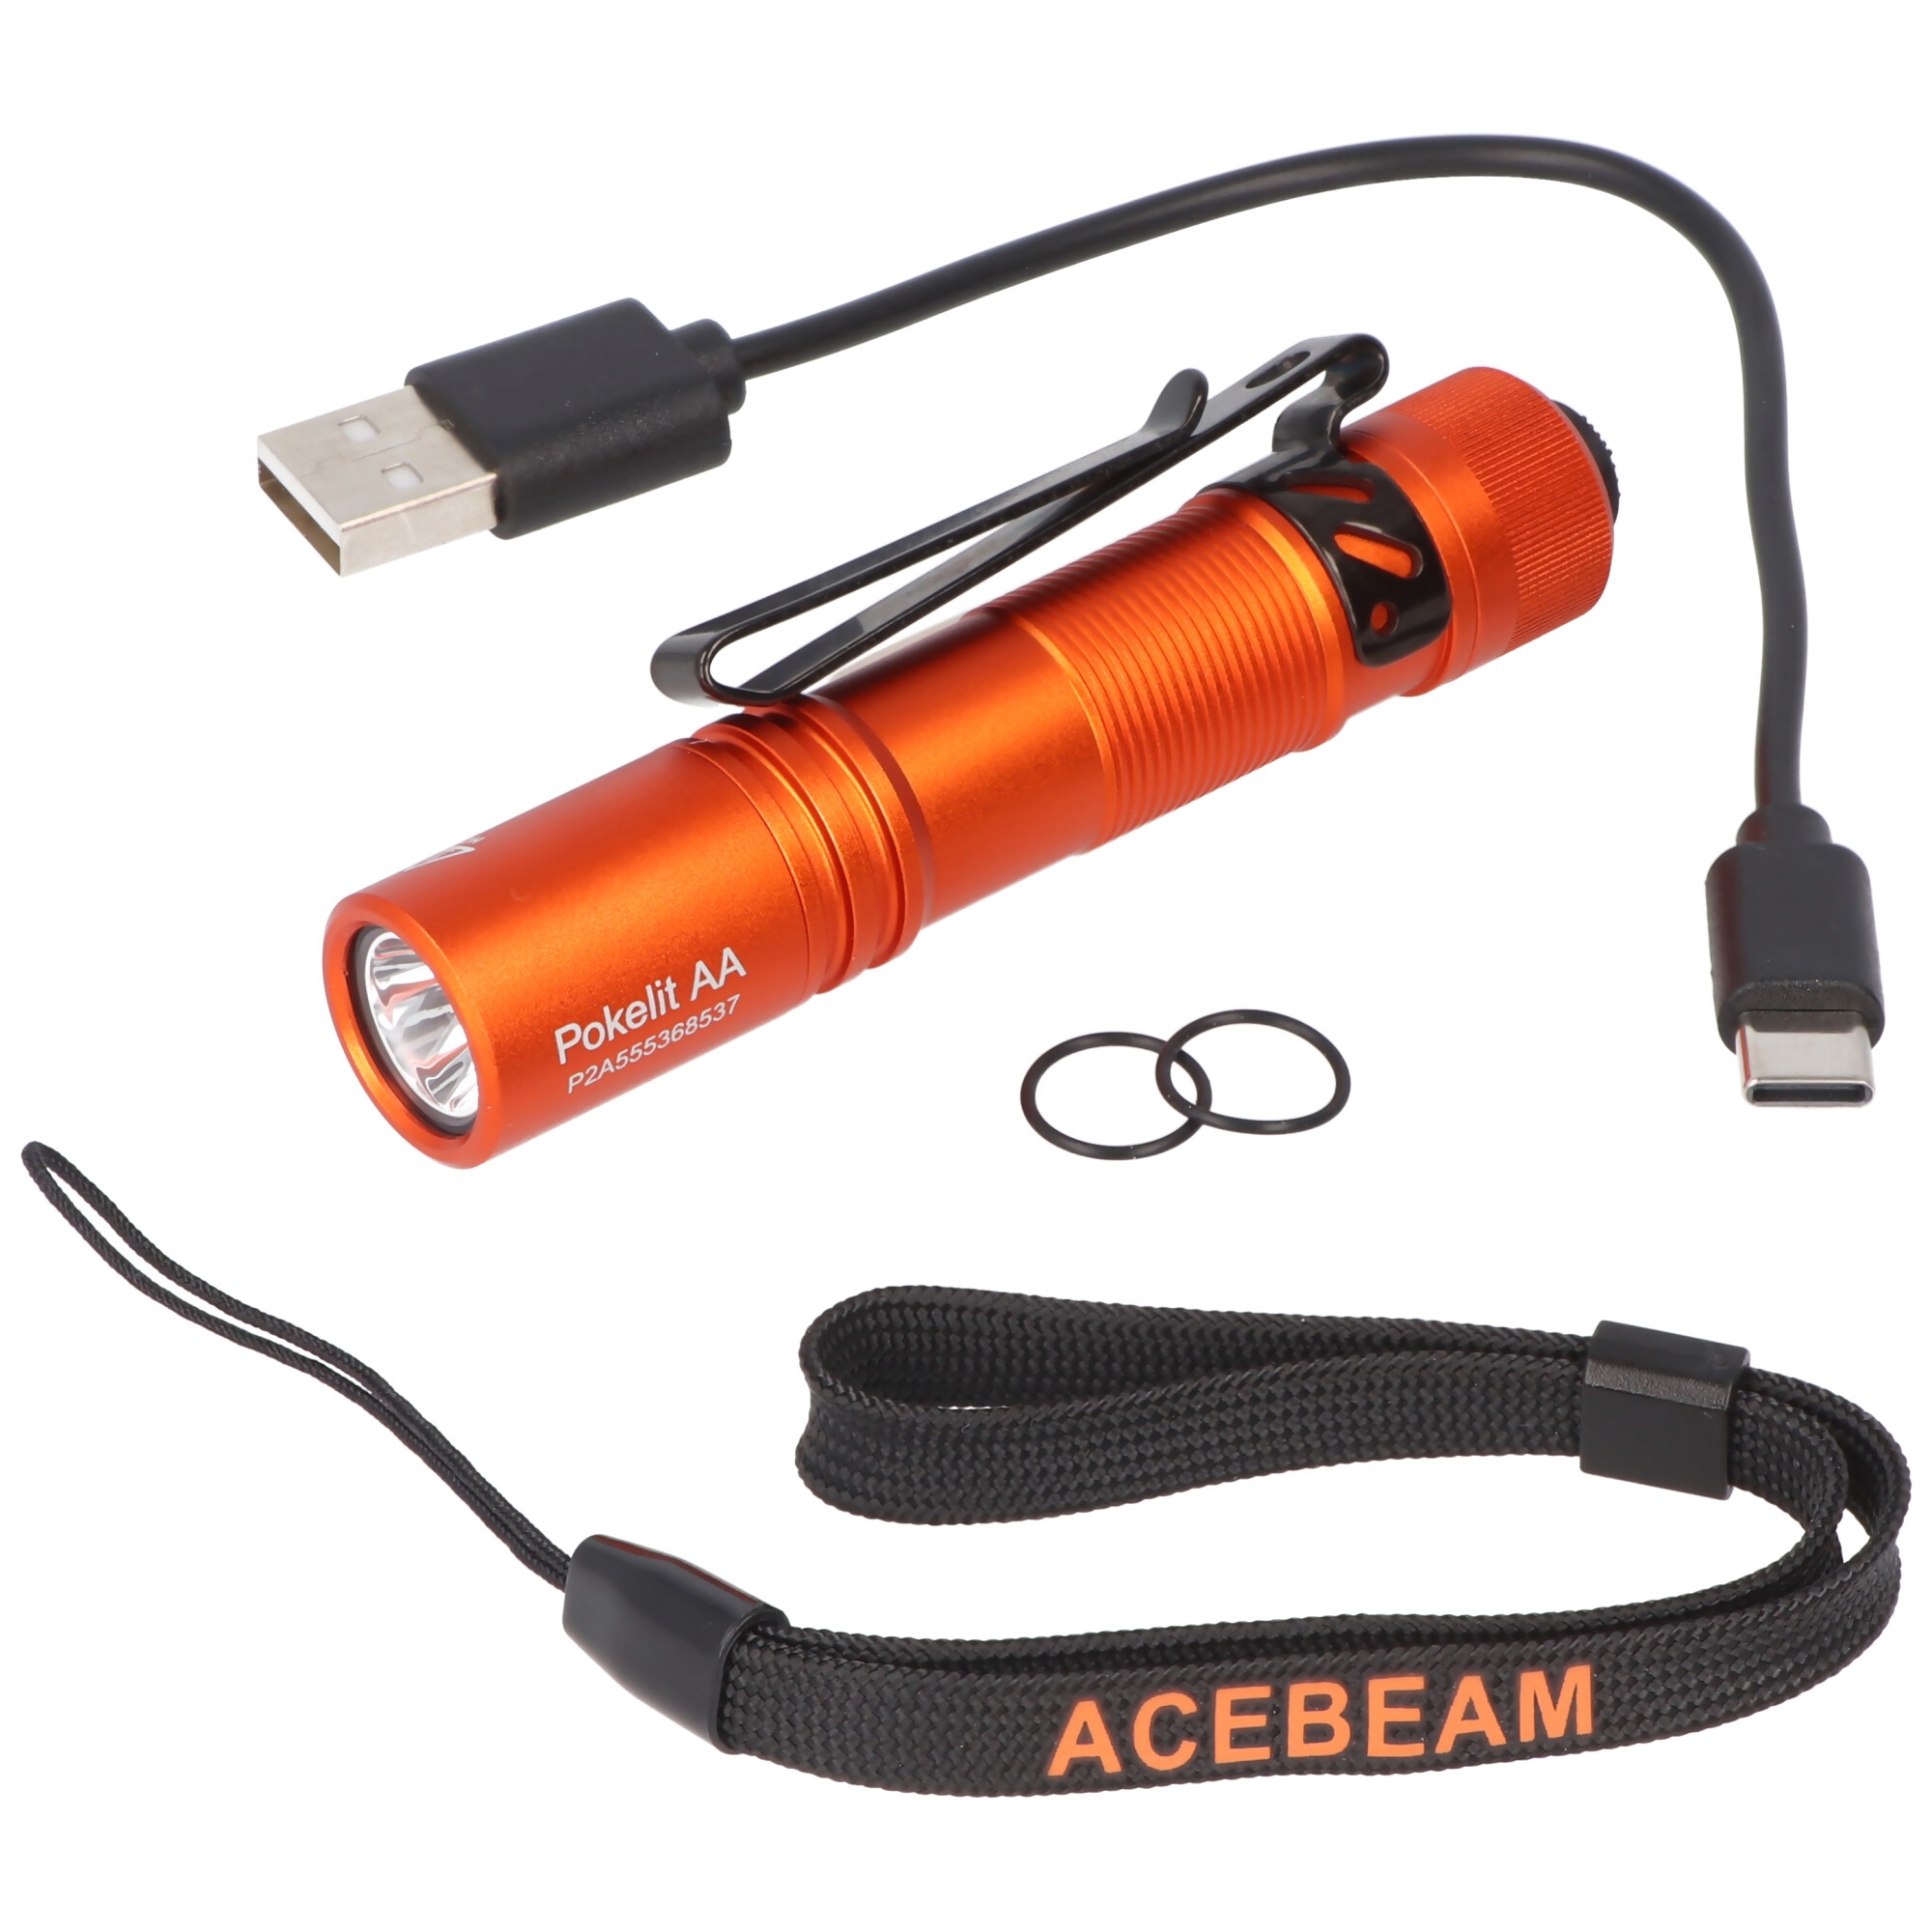 AceBeam Pokelit AA LED-Taschenlampe mit 550 Lumen, in drei Farben verfügbar, inklusive 14500 Li-Ion Akku mit USB-C Anschluss